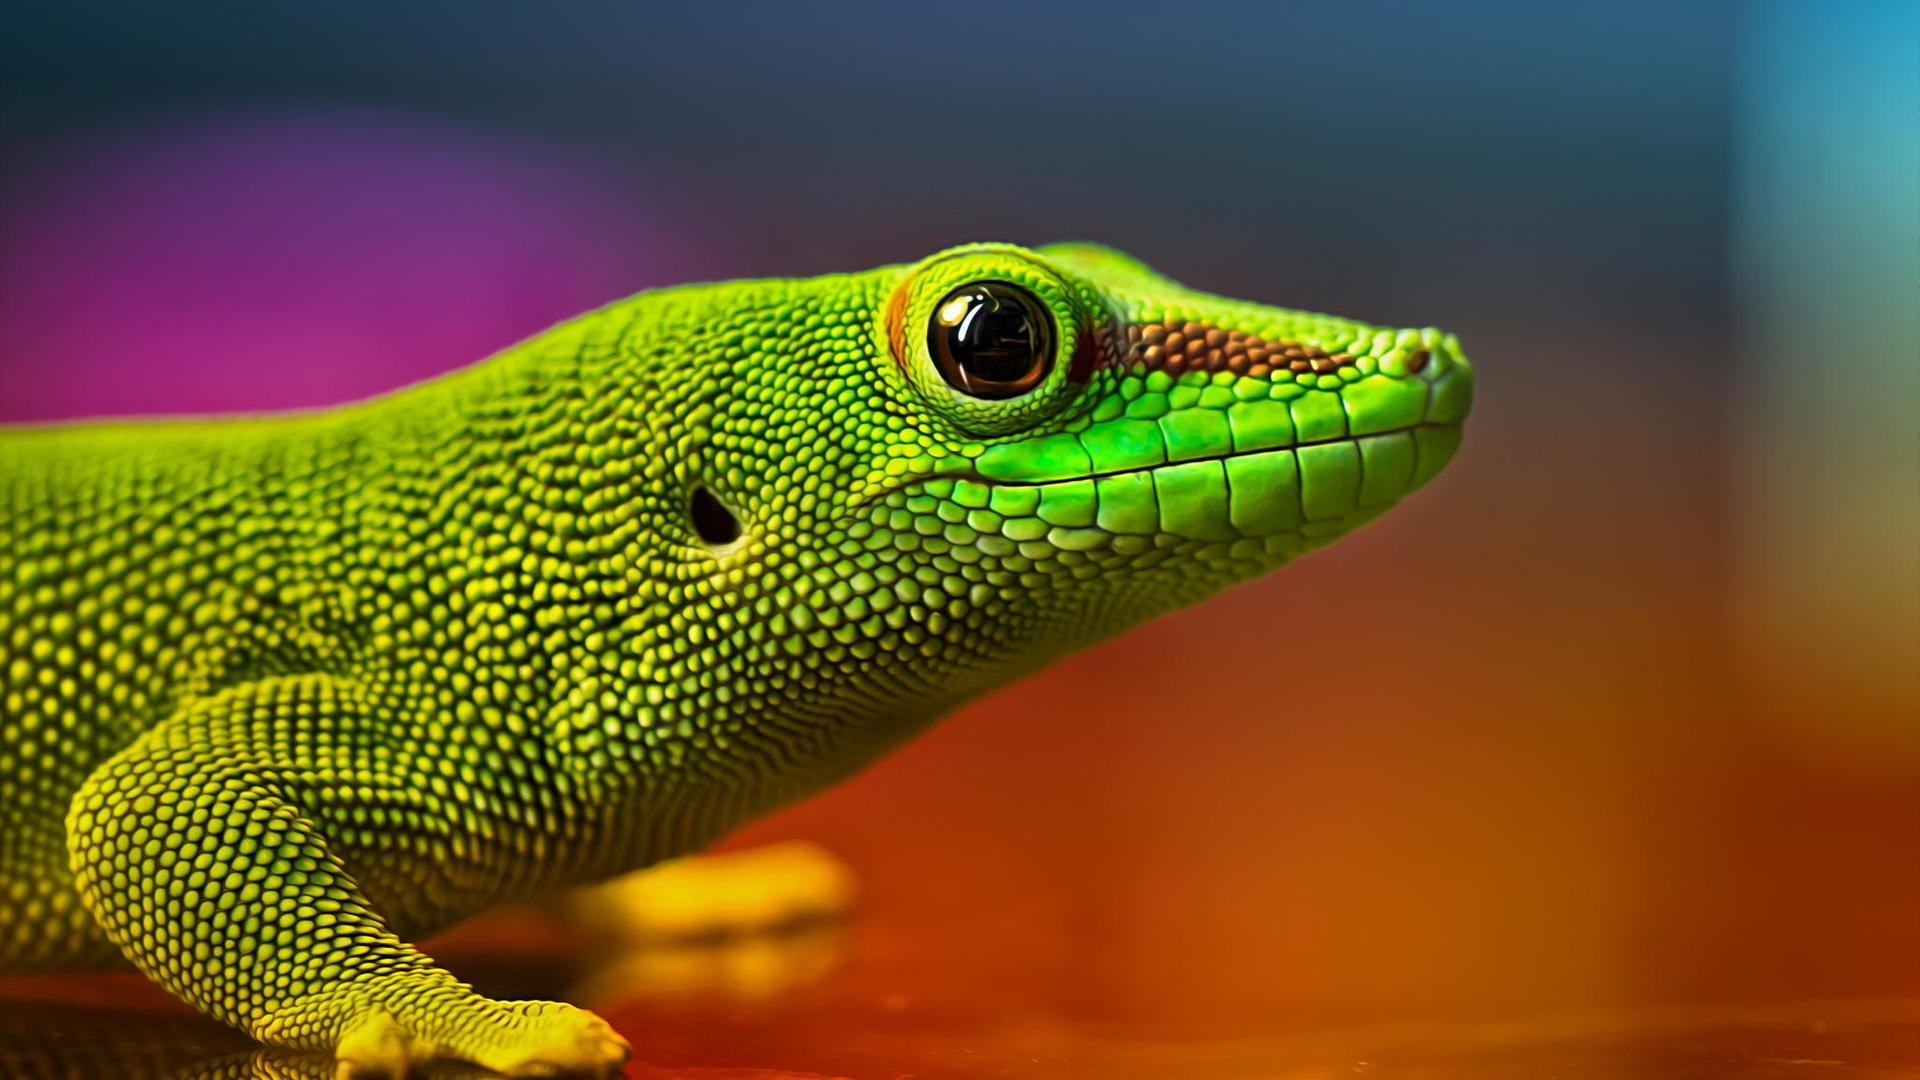 Green Lizard for 1920 x 1080 HDTV 1080p resolution